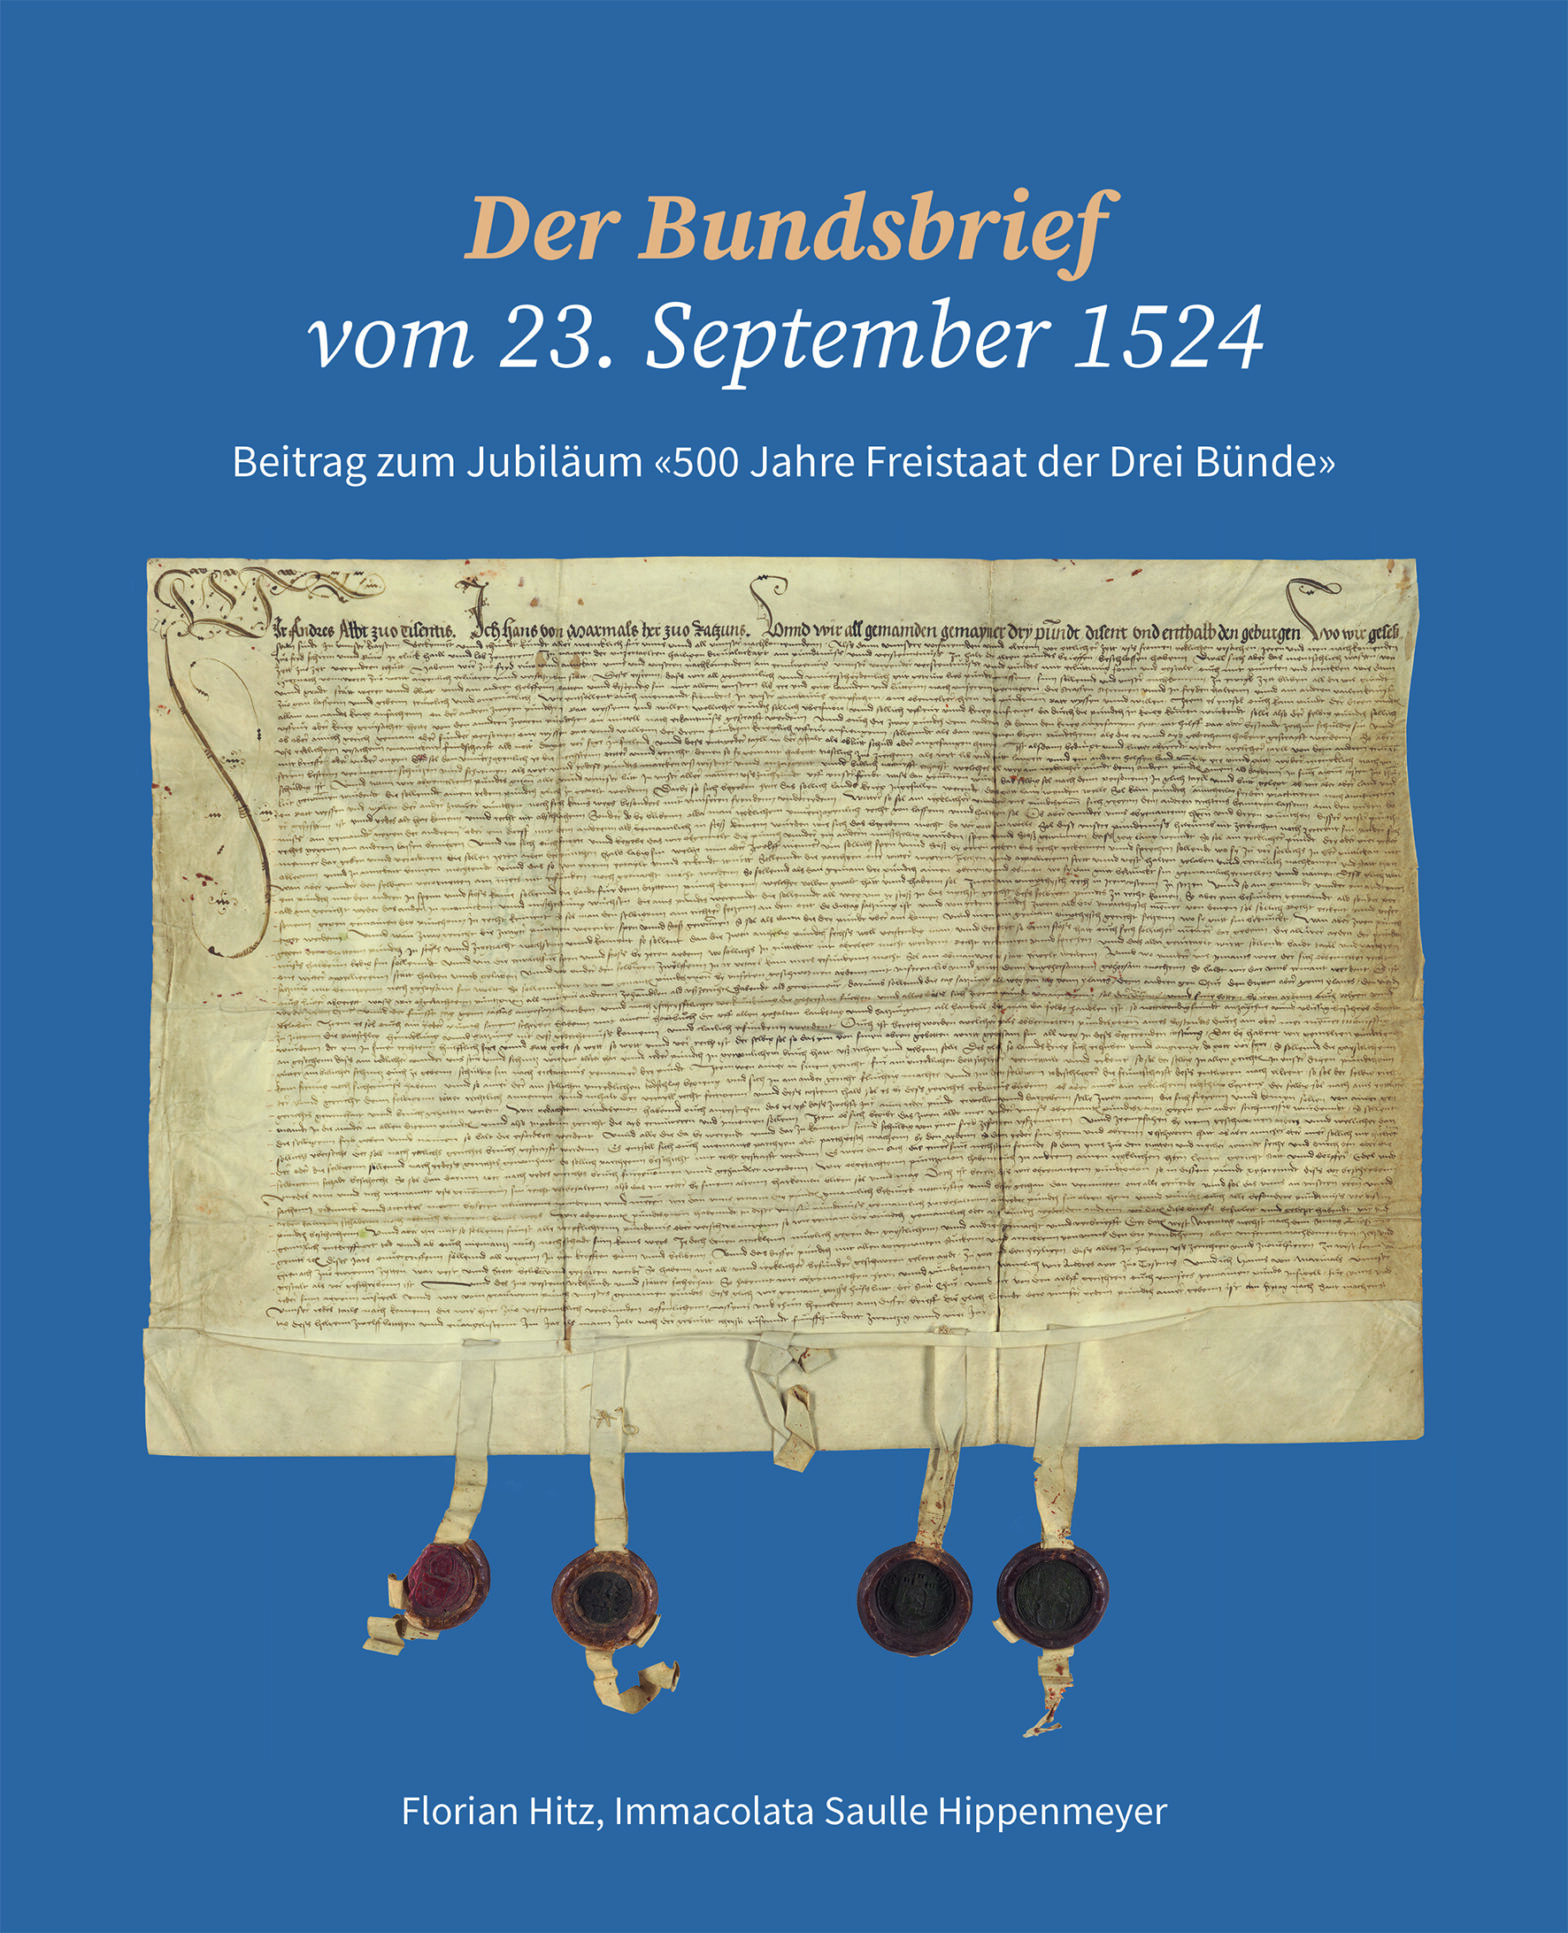 Der Bundsbrief vom 23. September 1524
Beitrag zum Jubiläum «500 Jahre Freistaat der Drei Bünde».